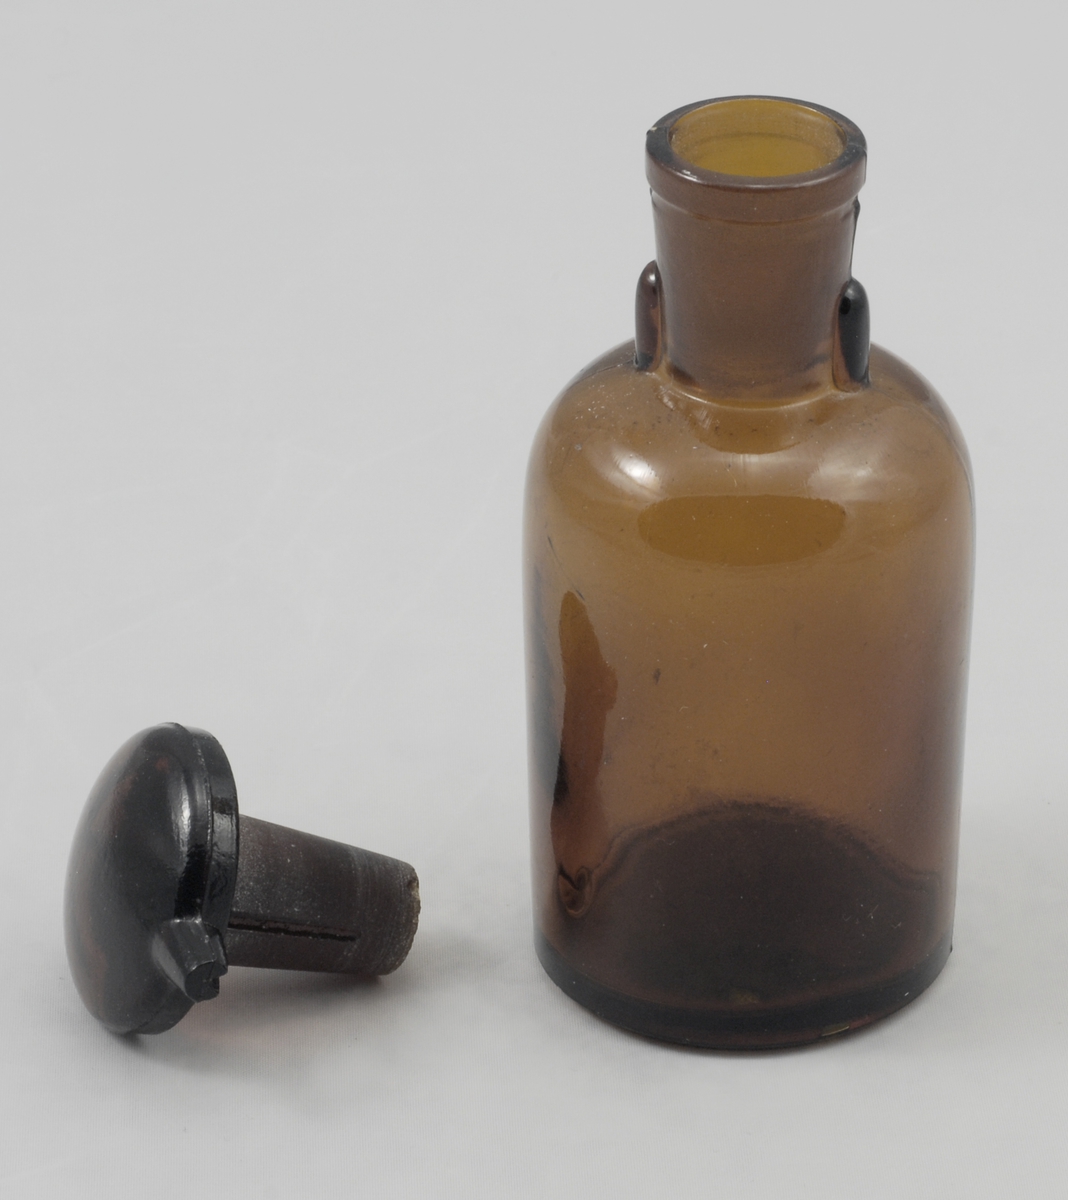 Sylindrisk brun glassflaske med markert avrundet skulder, sylindrisk, lettere konisk hals. På toppen en kork med soppform, korken har rift i stammen og hatten til uthelling av væske.